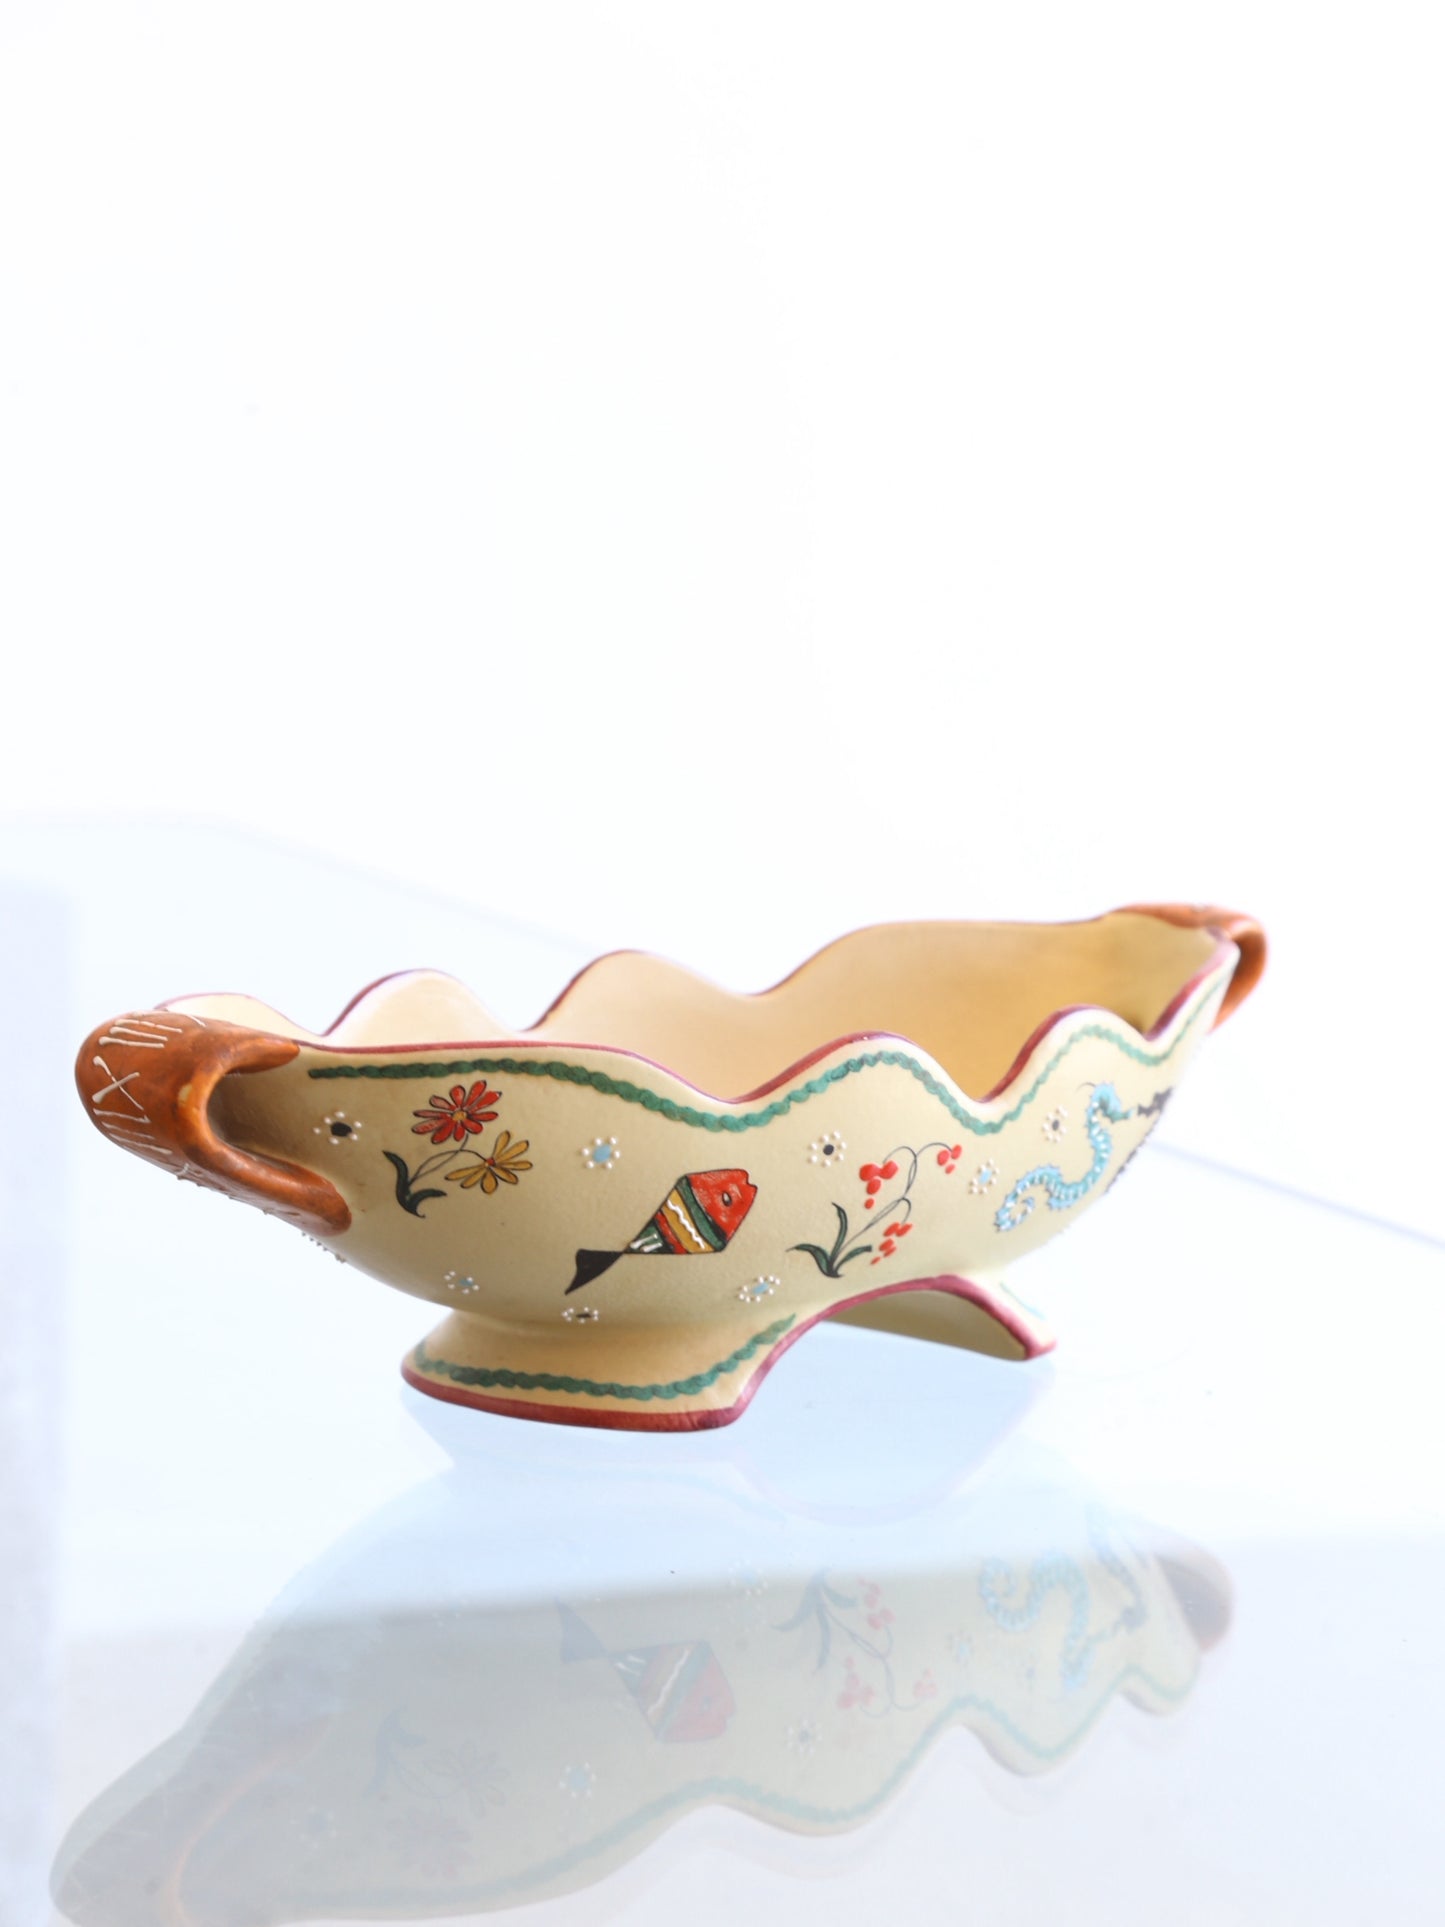 Volpi Deruta Italian Centrepiece Bowl Ceramic with Art Work, 1960s